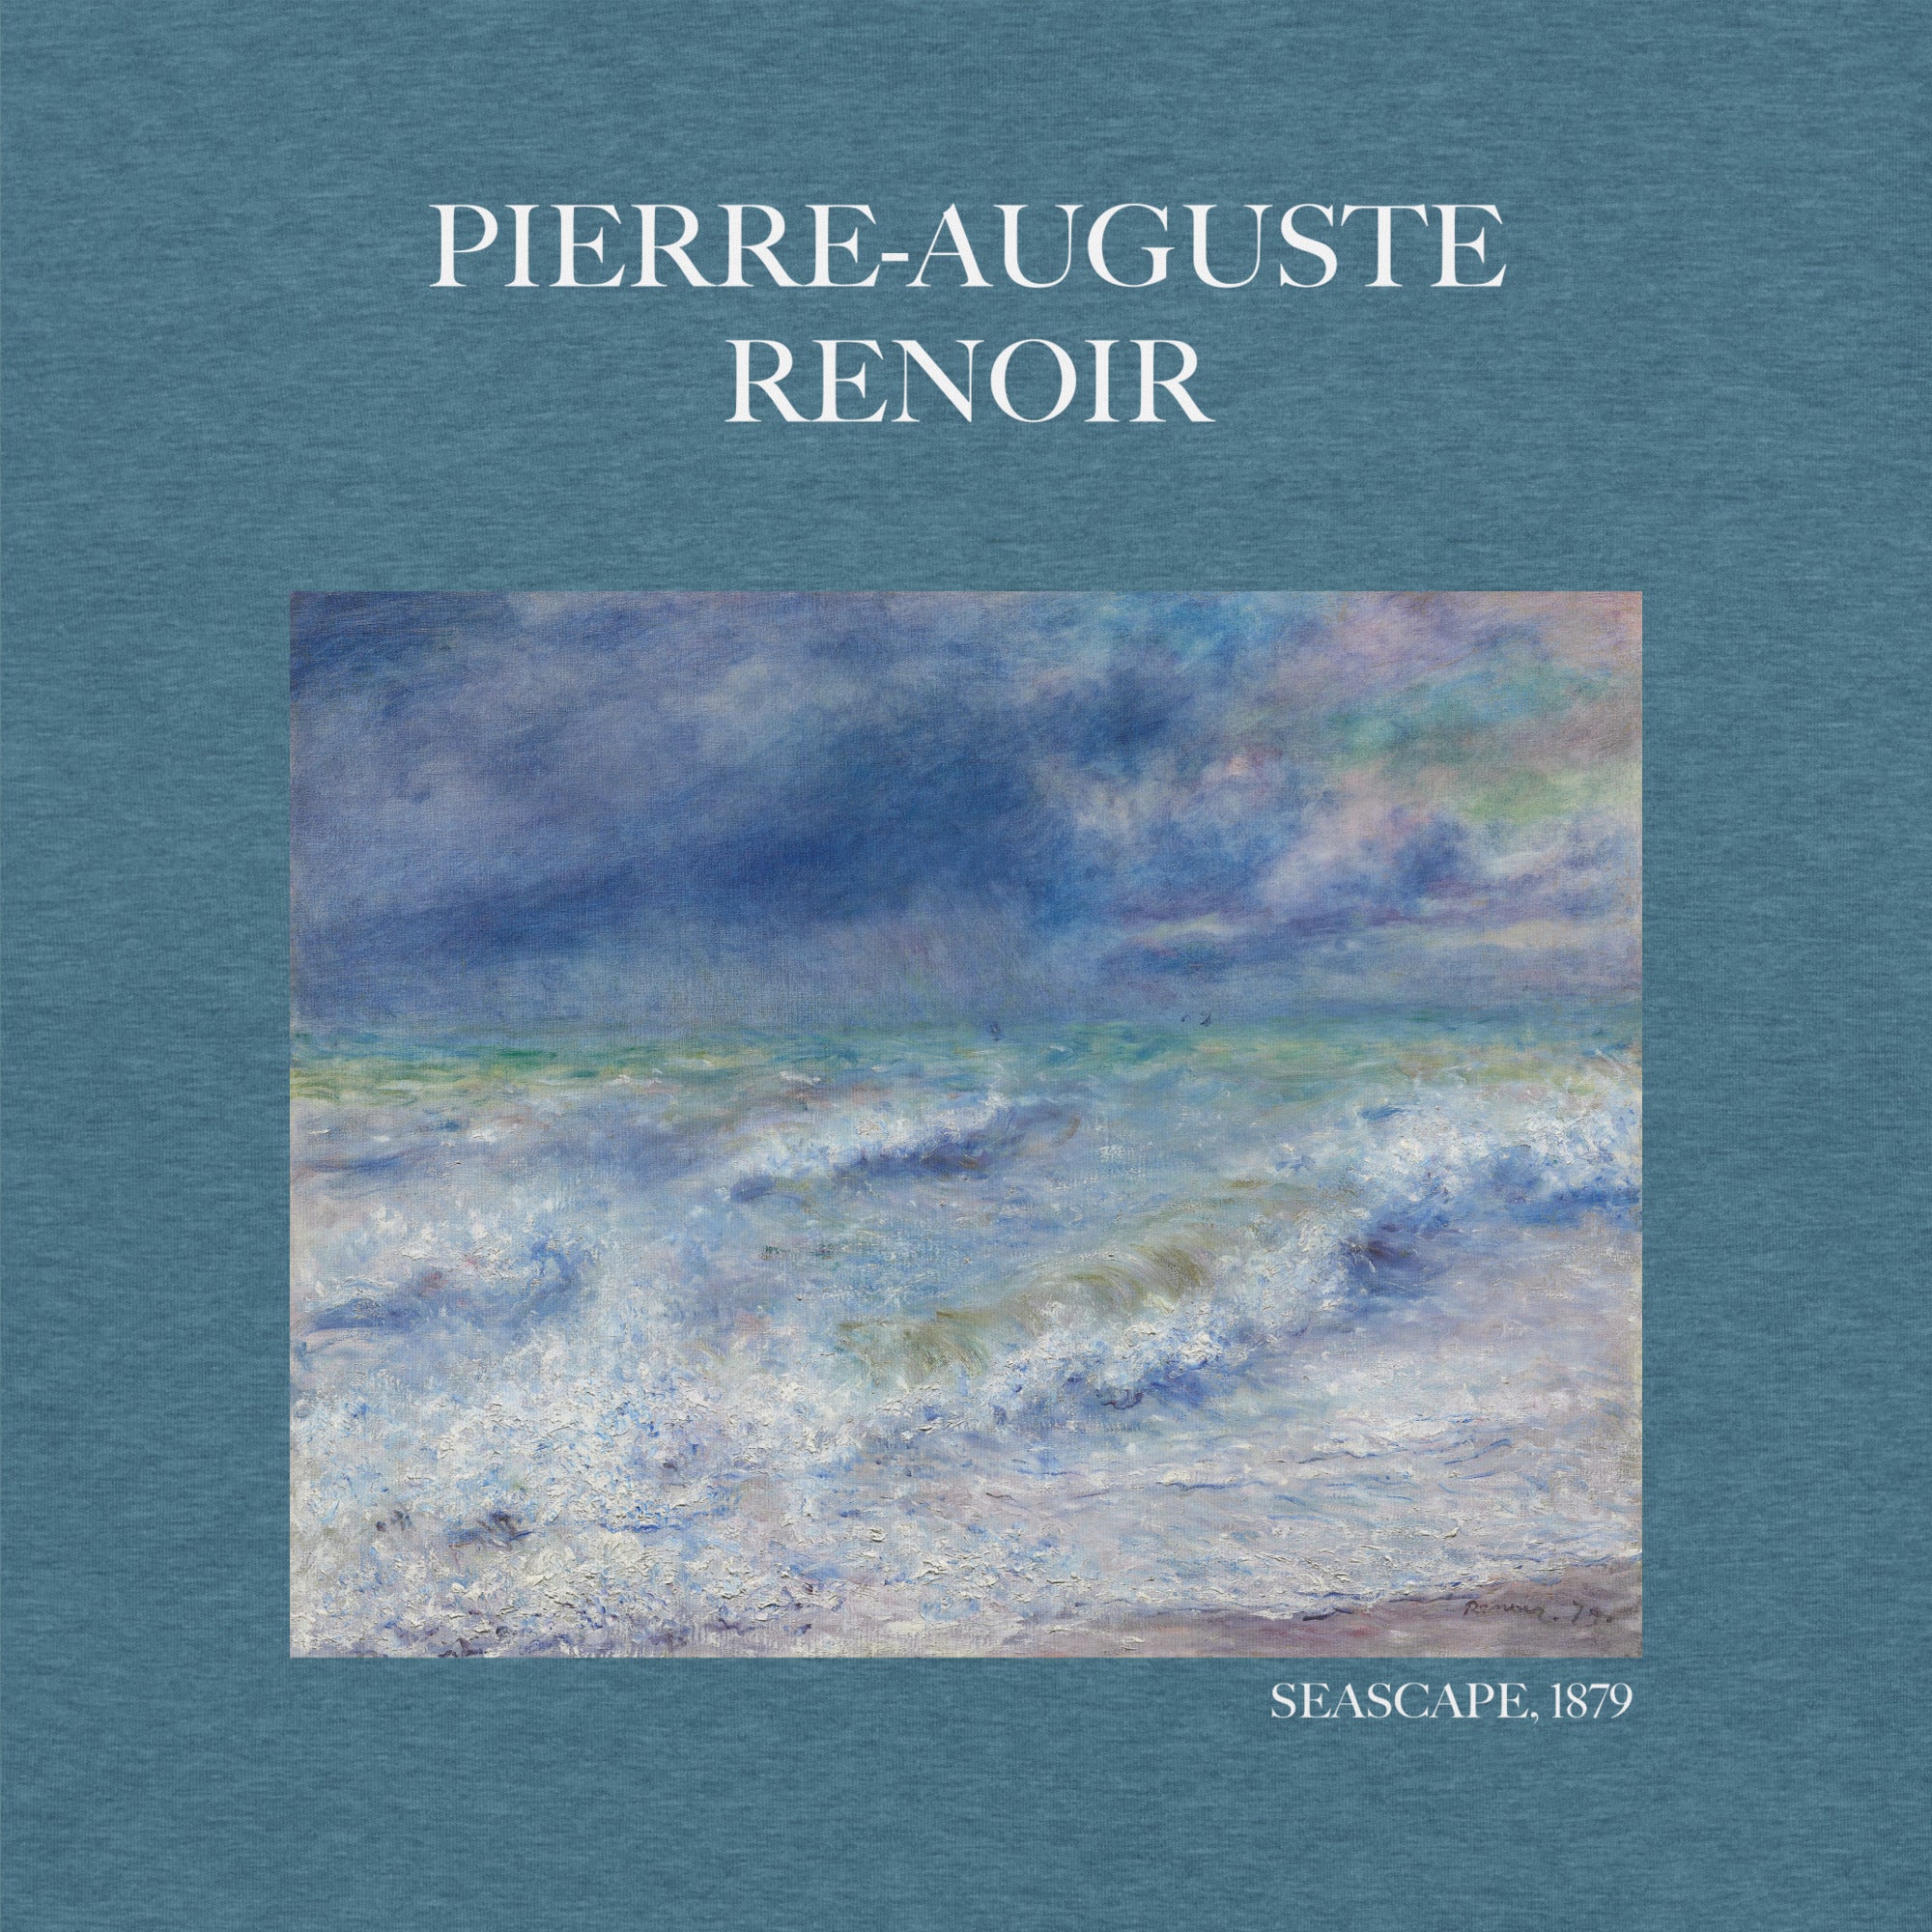 Pierre-Auguste Renoir T-Shirt „Meereslandschaft“, berühmtes Gemälde, Unisex, klassisches Kunst-T-Shirt